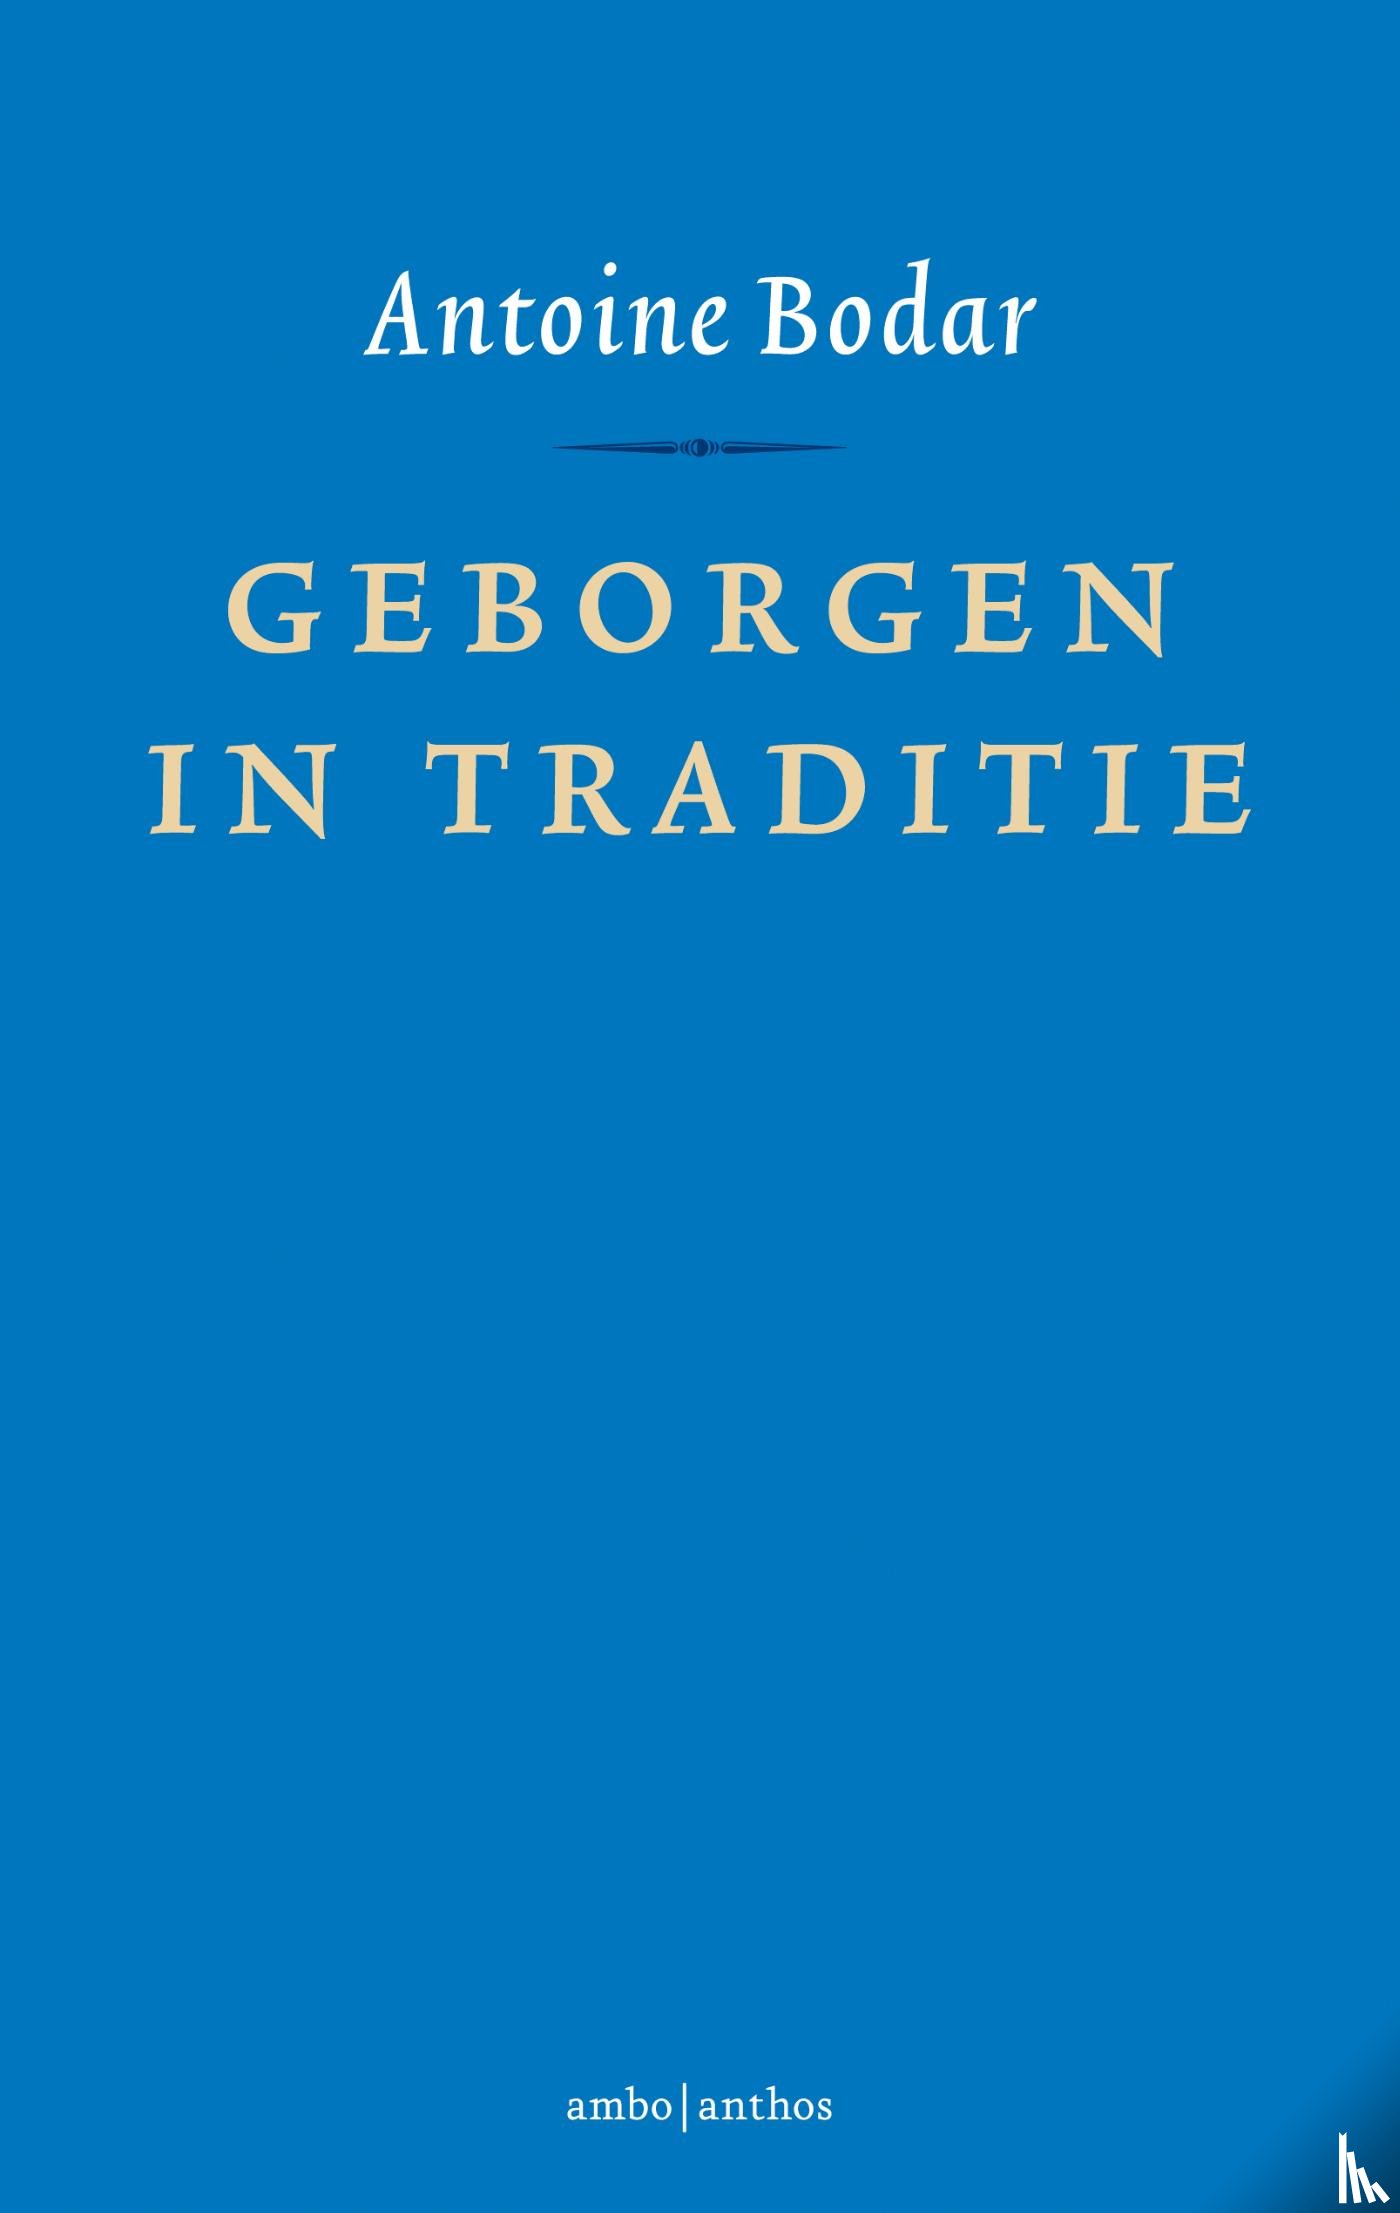 Bodar, Antoine - Geborgen in traditie